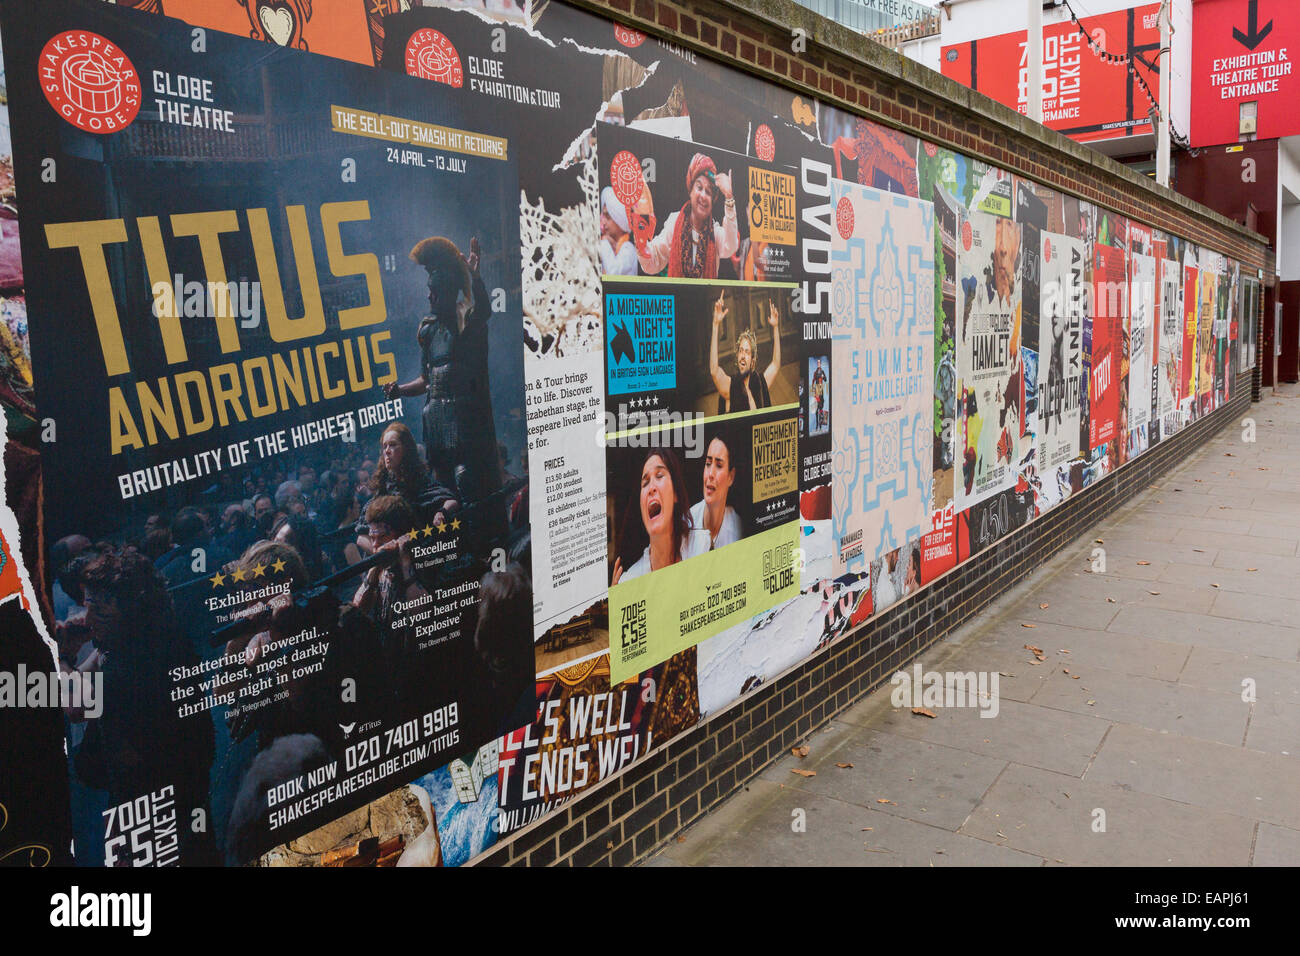 Manifesti pubblicitari produzioni teatrali adornano una parete al di fuori il Globe Theatre, London, England, Regno Unito Foto Stock